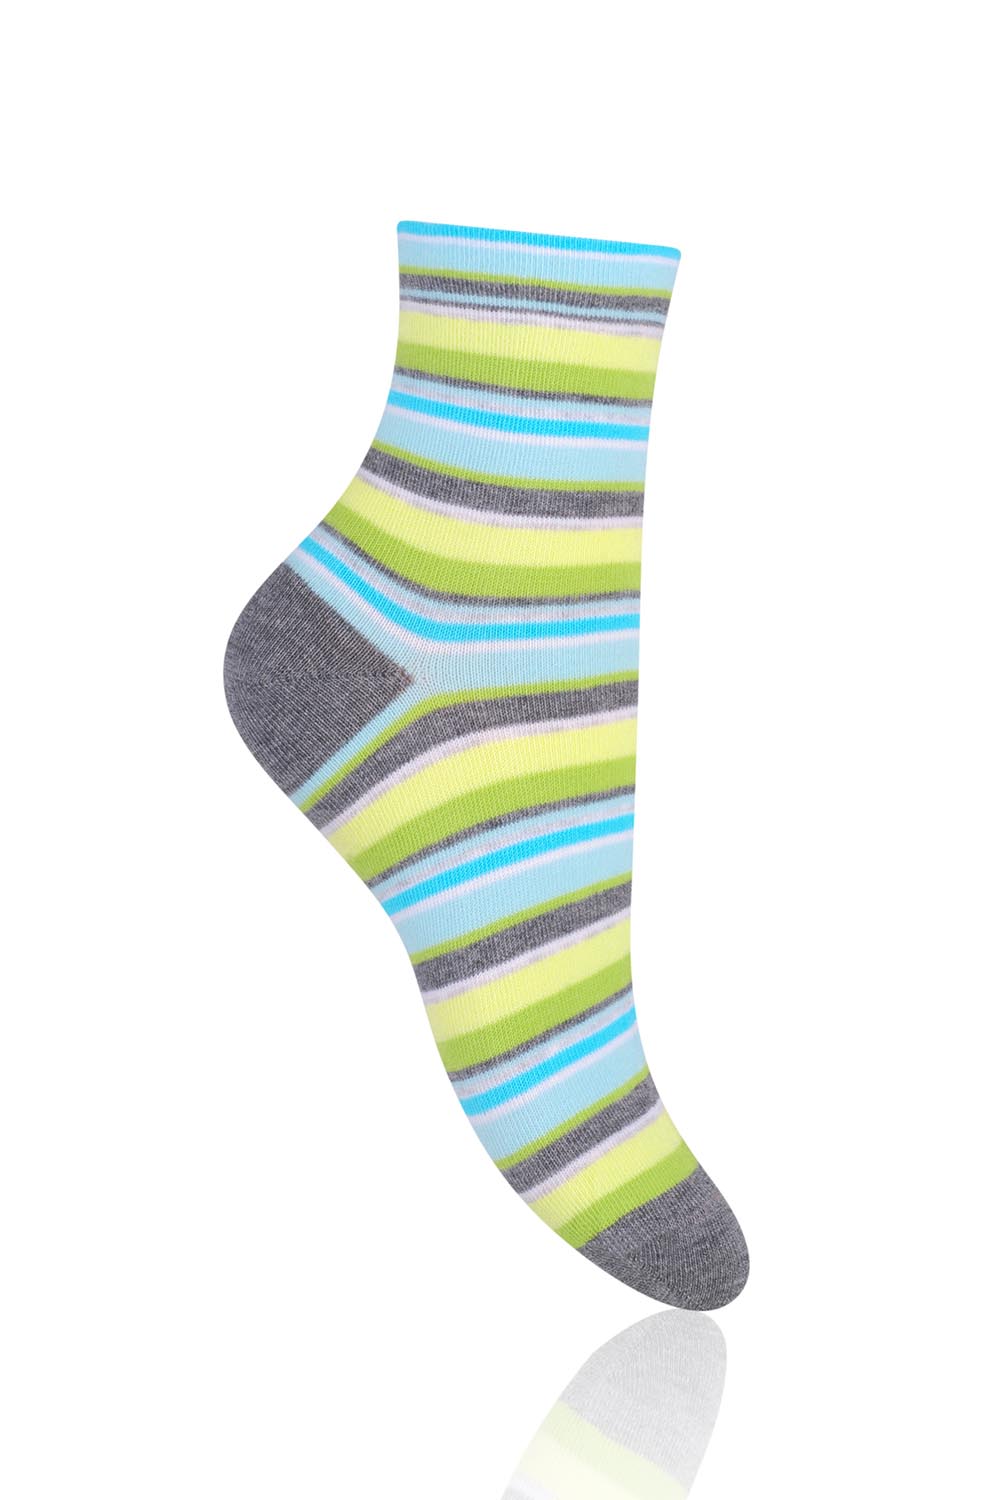 Dámské ponožky Steven 037-80 - Zelená/šedá/38-40